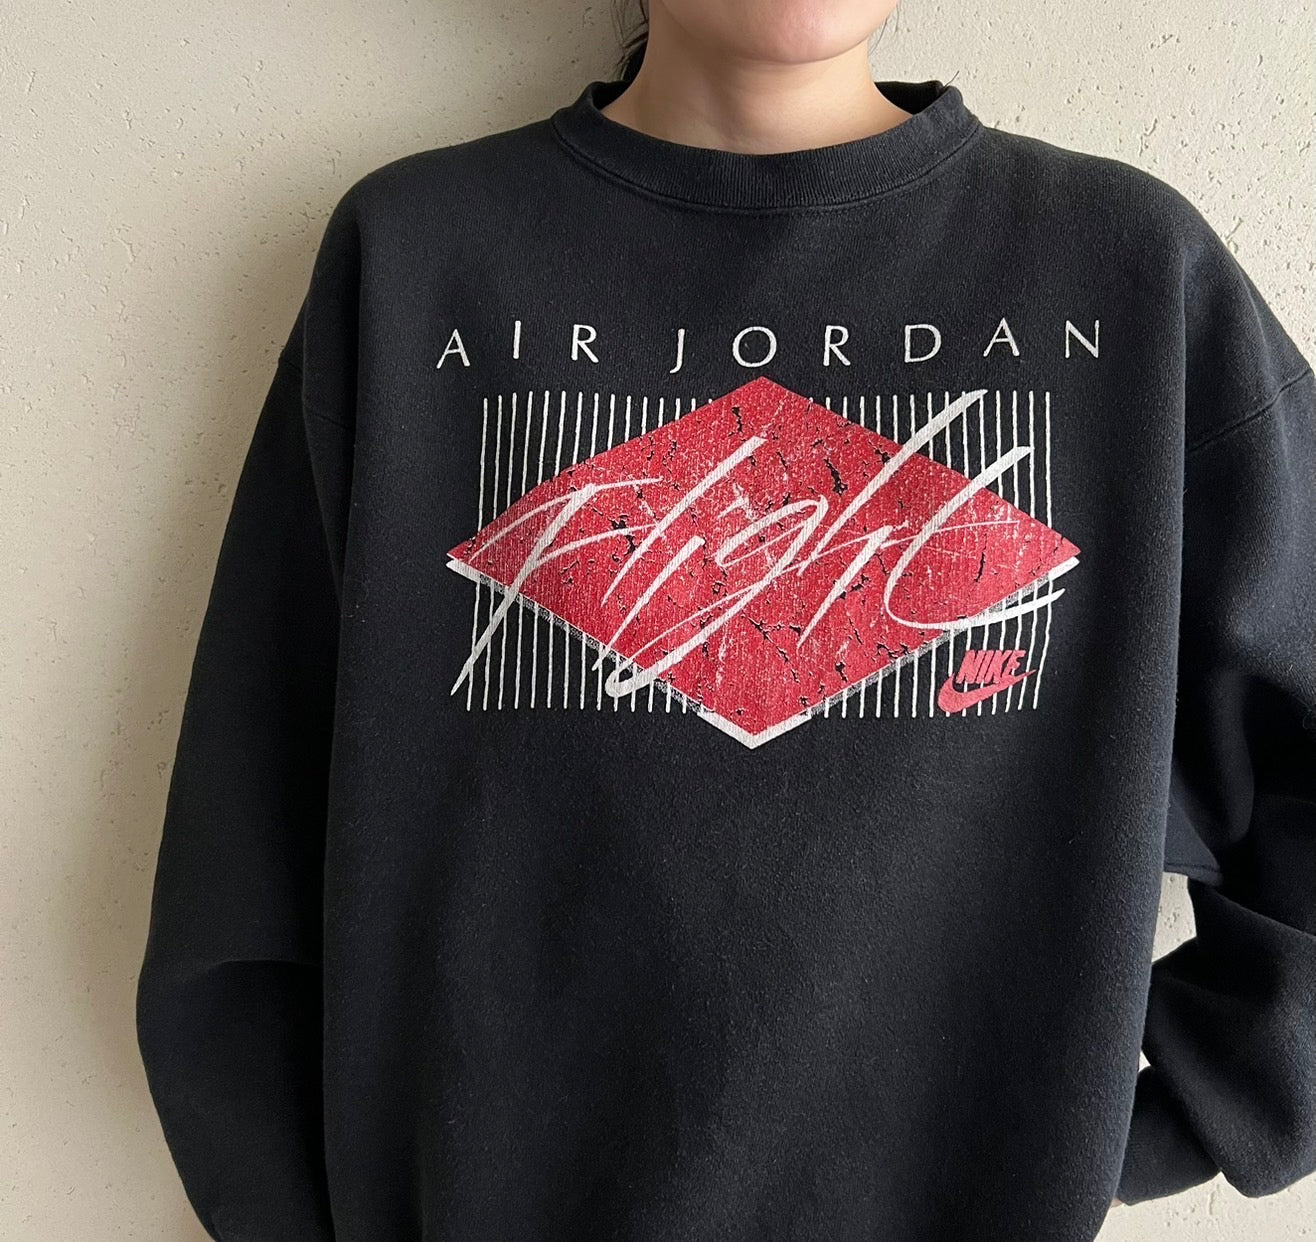 90s "Nike Air Jordan" Printed Sweater Made in USA